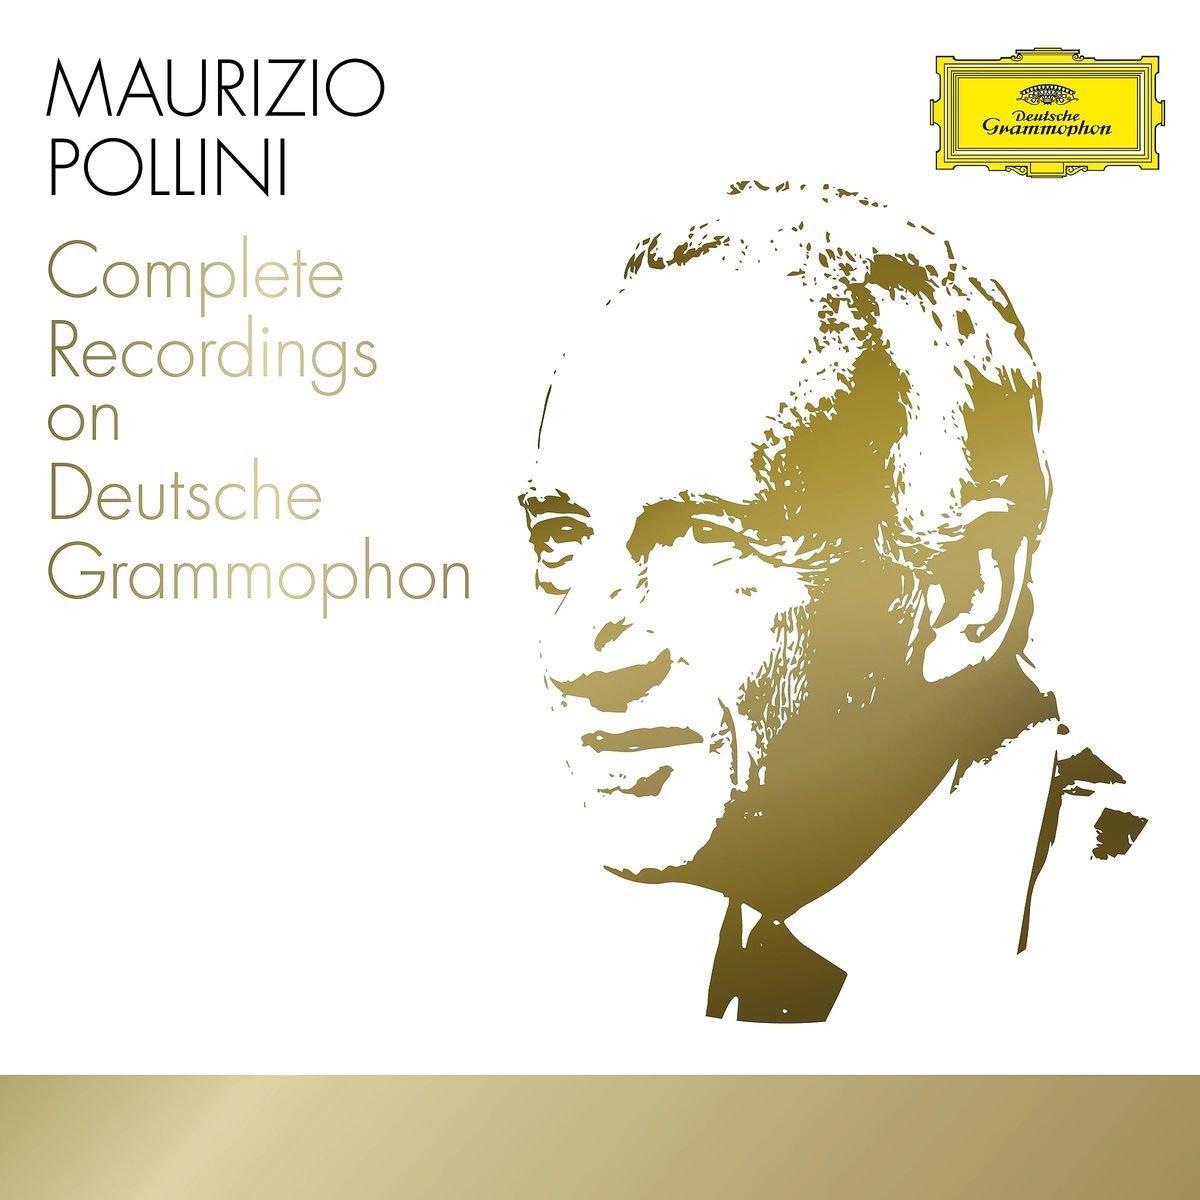 Maurizio Pollini - Complete Recordings on Deutsche Grammophon Box set | Maurizio Pollini